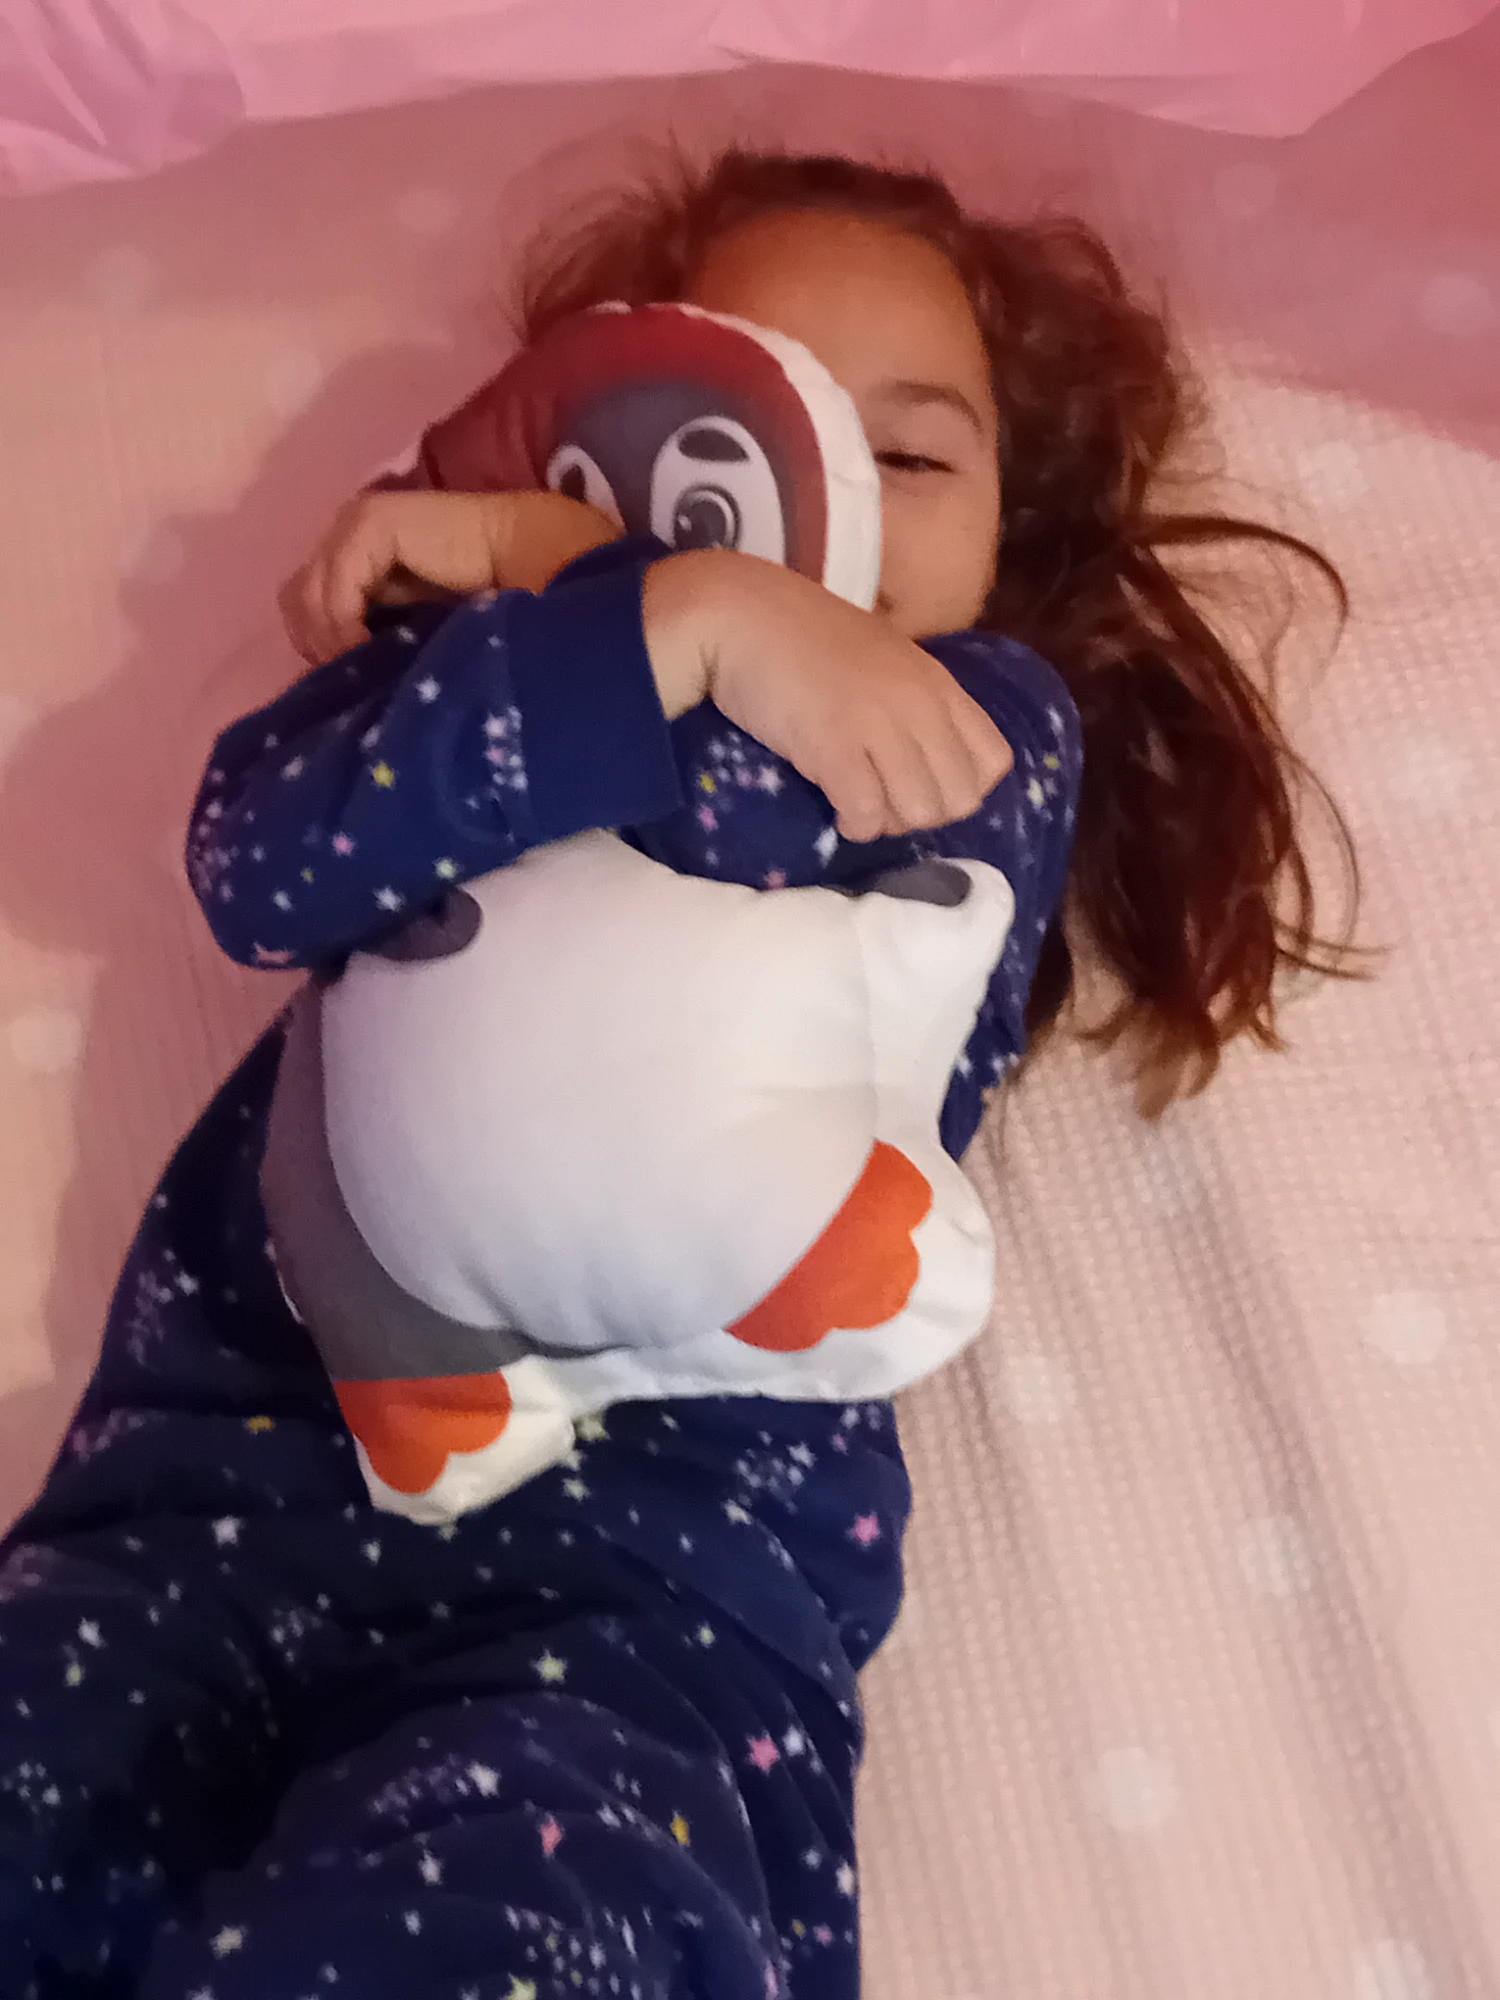 Sweet dreams my little penguin